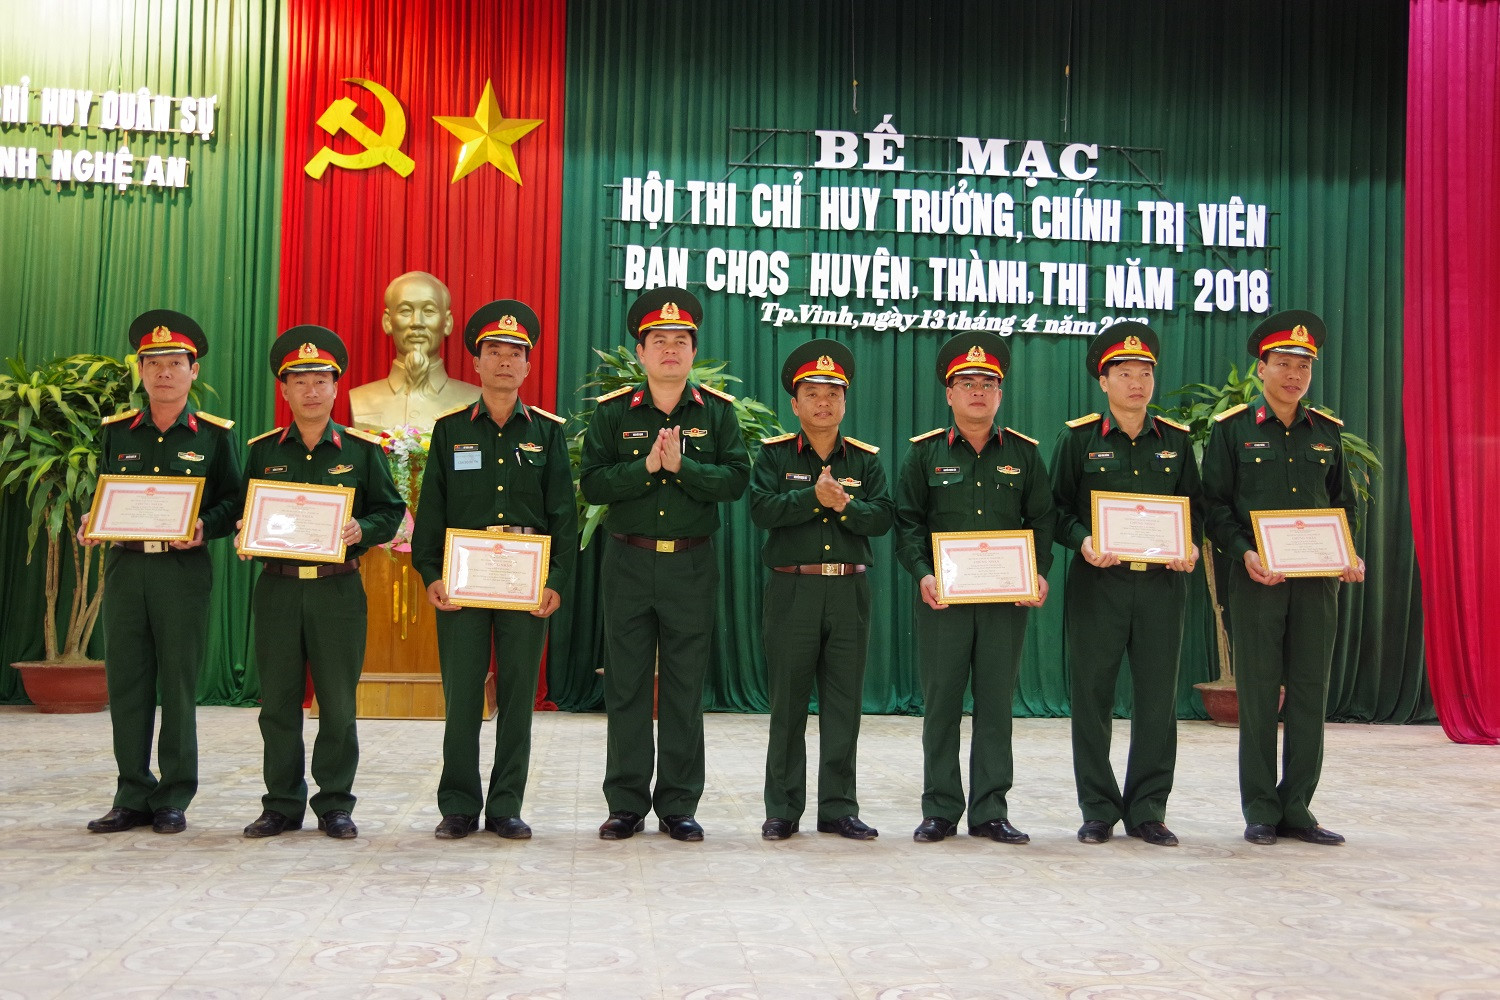 Thủ trưởng Bộ CHQS tỉnh trao Giải Nhất, Nhì, Ba cá nhân cho các đổng chí Chỉ huy trưởng, Chính trị viên có thành tích xuất sắc tại hội thi